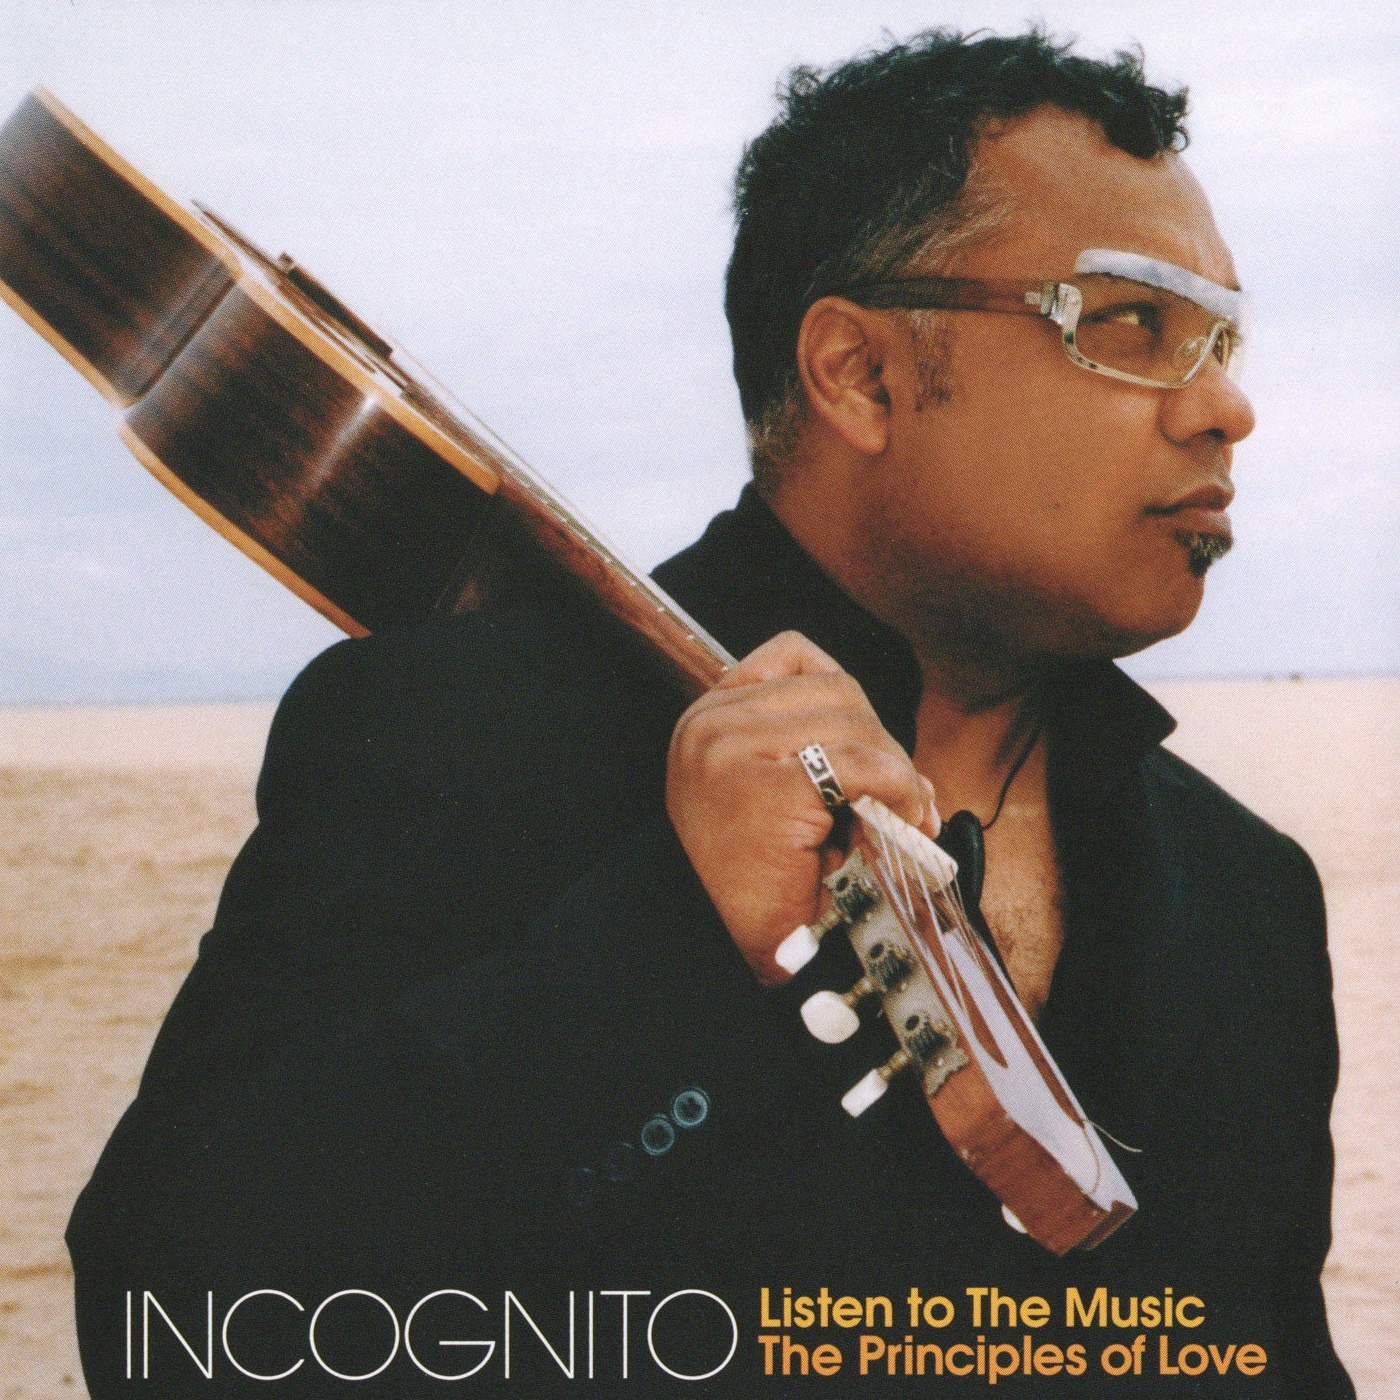 Incognito-The Principles of Love (Incognito Remix)